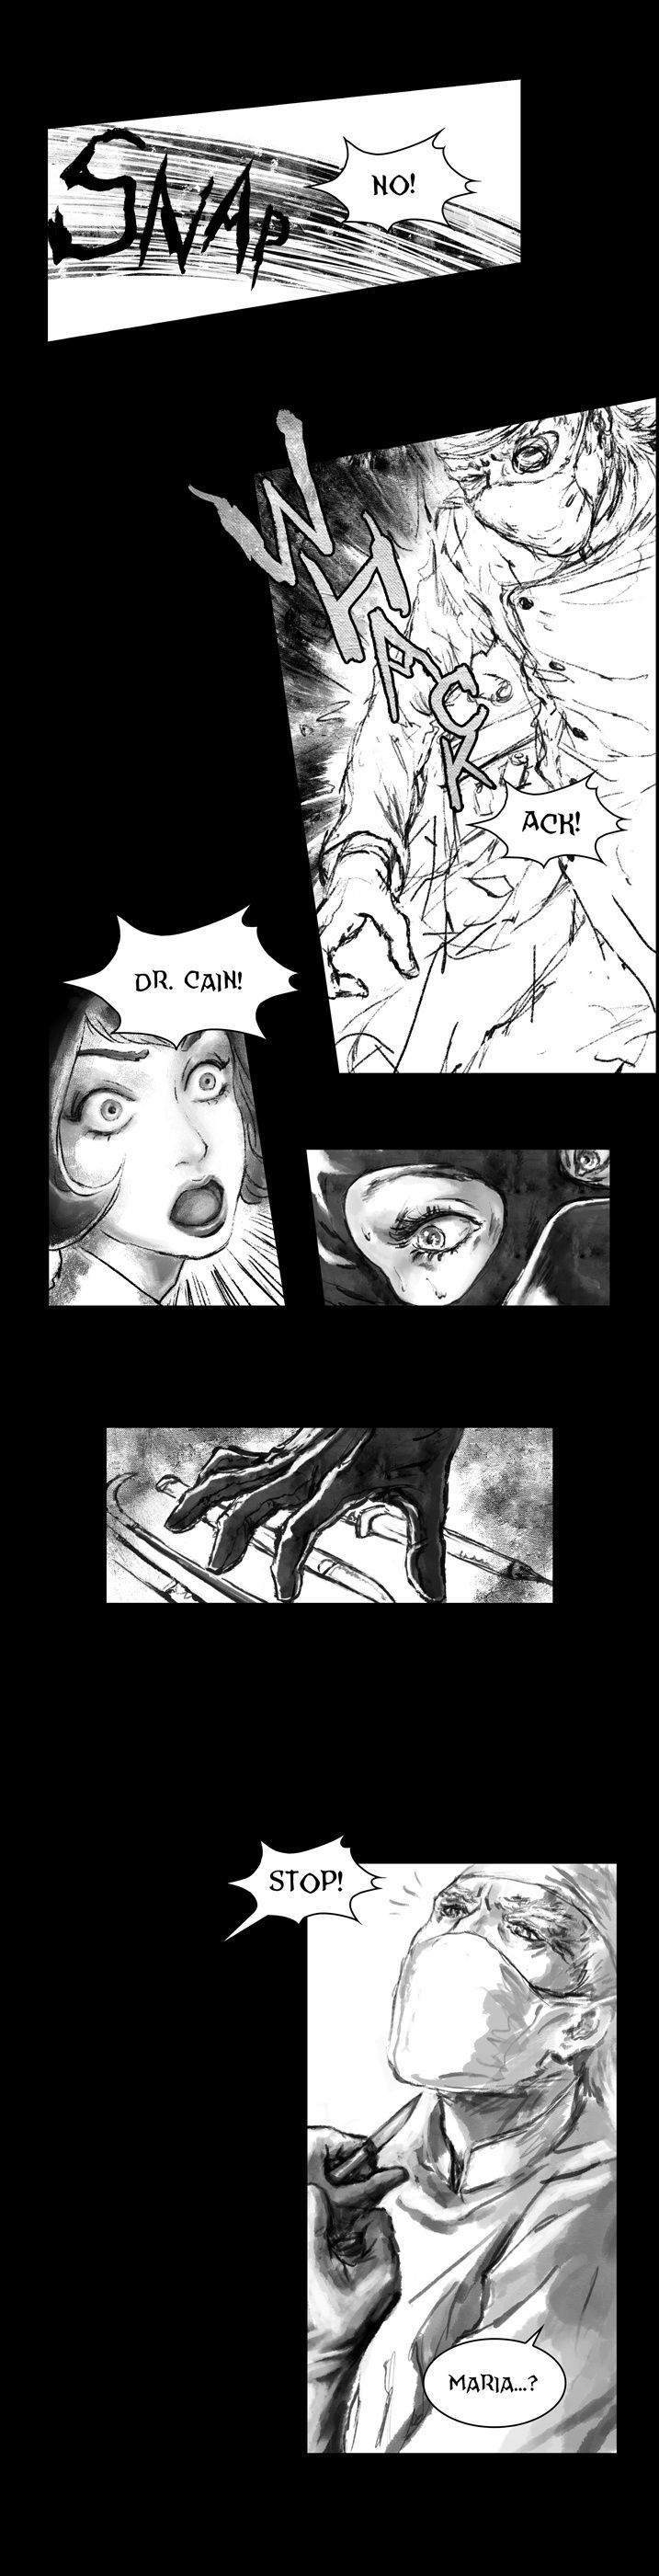 Deadbrain - Page 2